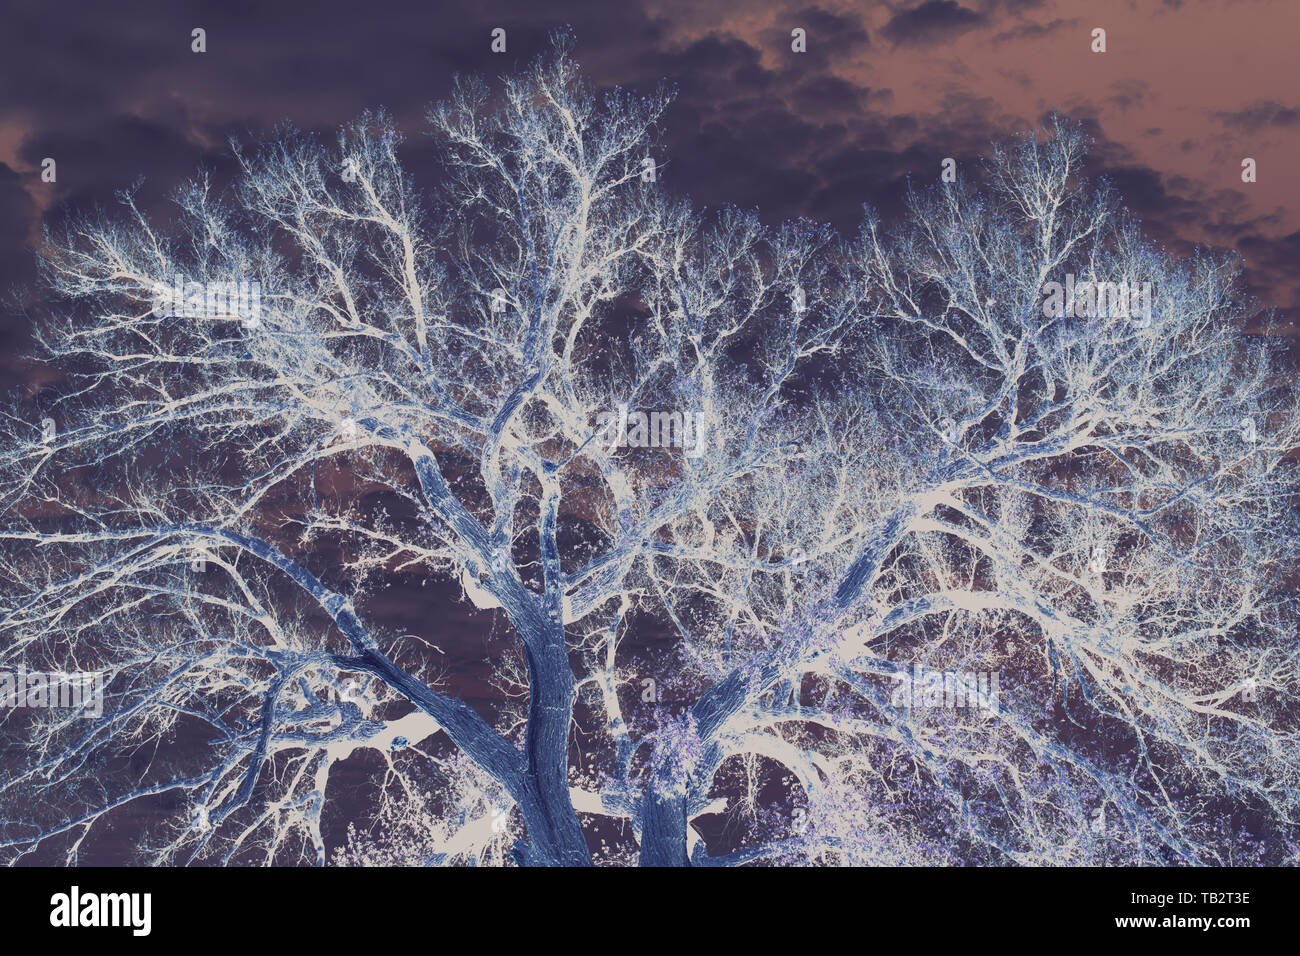 Imagen invertida de un gran árbol de Cottonwood, vista desde debajo de los árboles y las ramas contra el cielo. Foto de stock